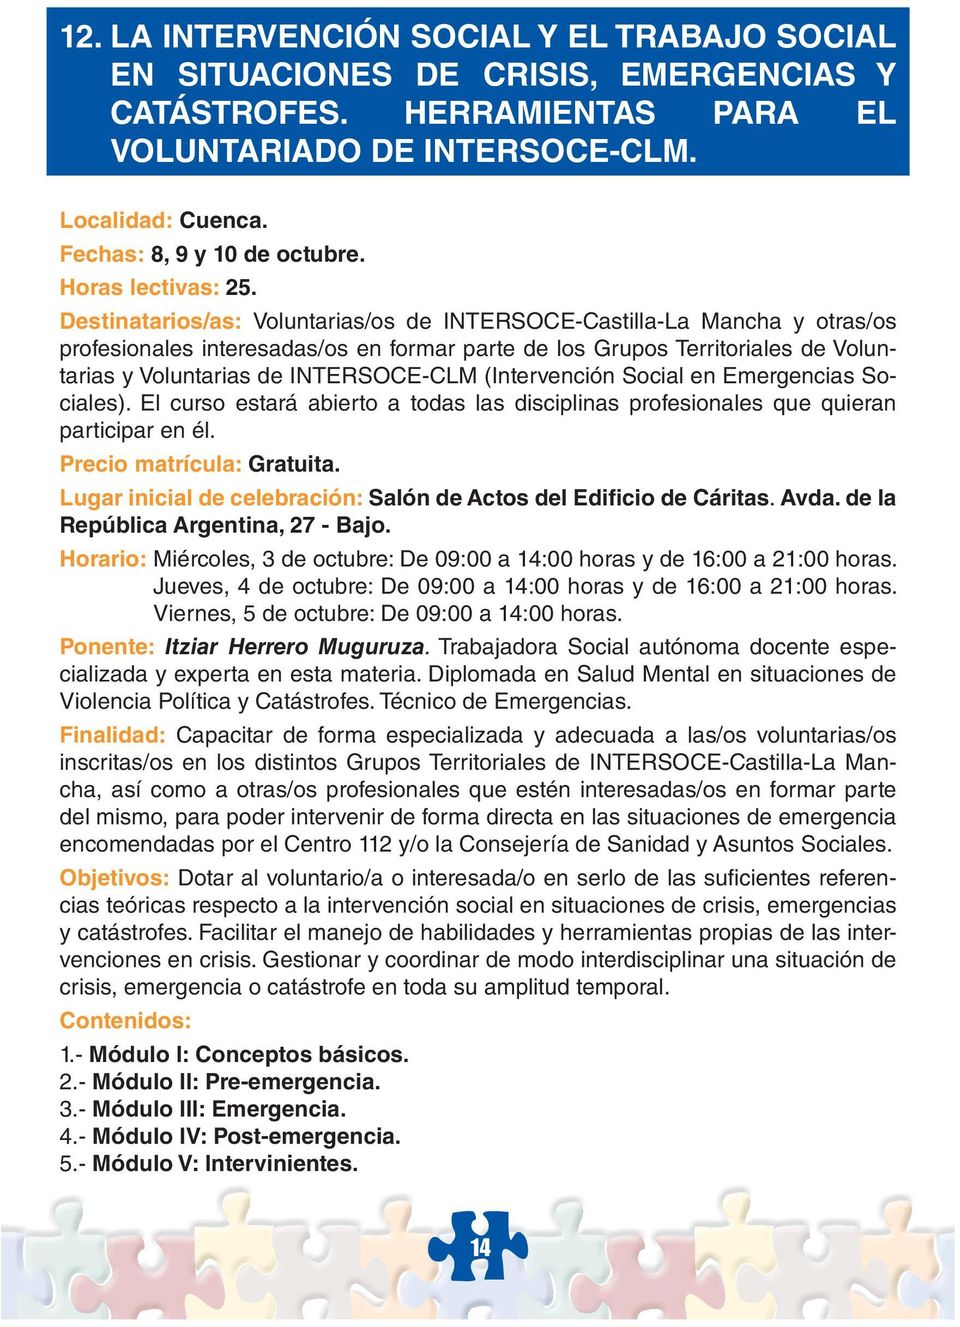 Destinatarios/as: Voluntarias/os de INTERSOCE-Castilla-La Mancha y otras/os profesionales interesadas/os en formar parte de los Grupos Territoriales de Voluntarias y Voluntarias de INTERSOCE-CLM